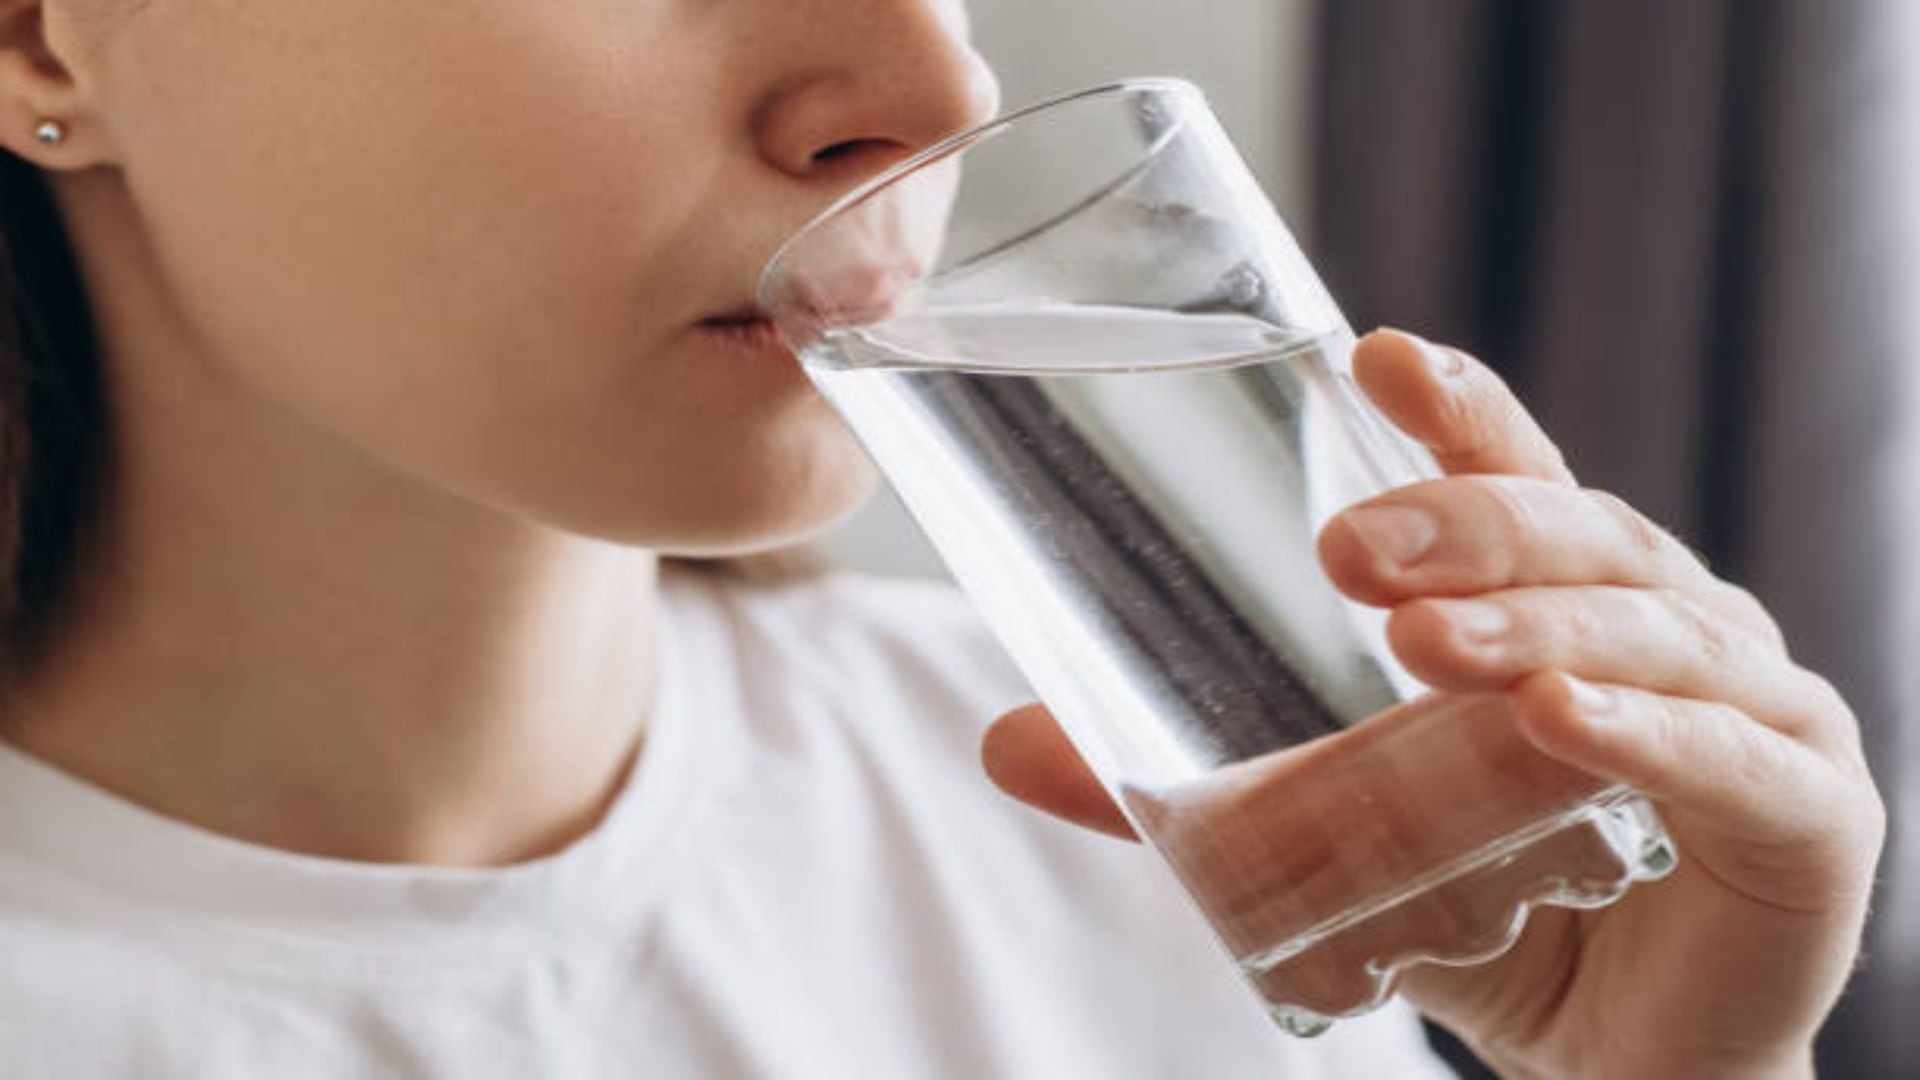 Algunos expertos recomiendan tomar agua fría para intentar frenar los espasmos del diafragma